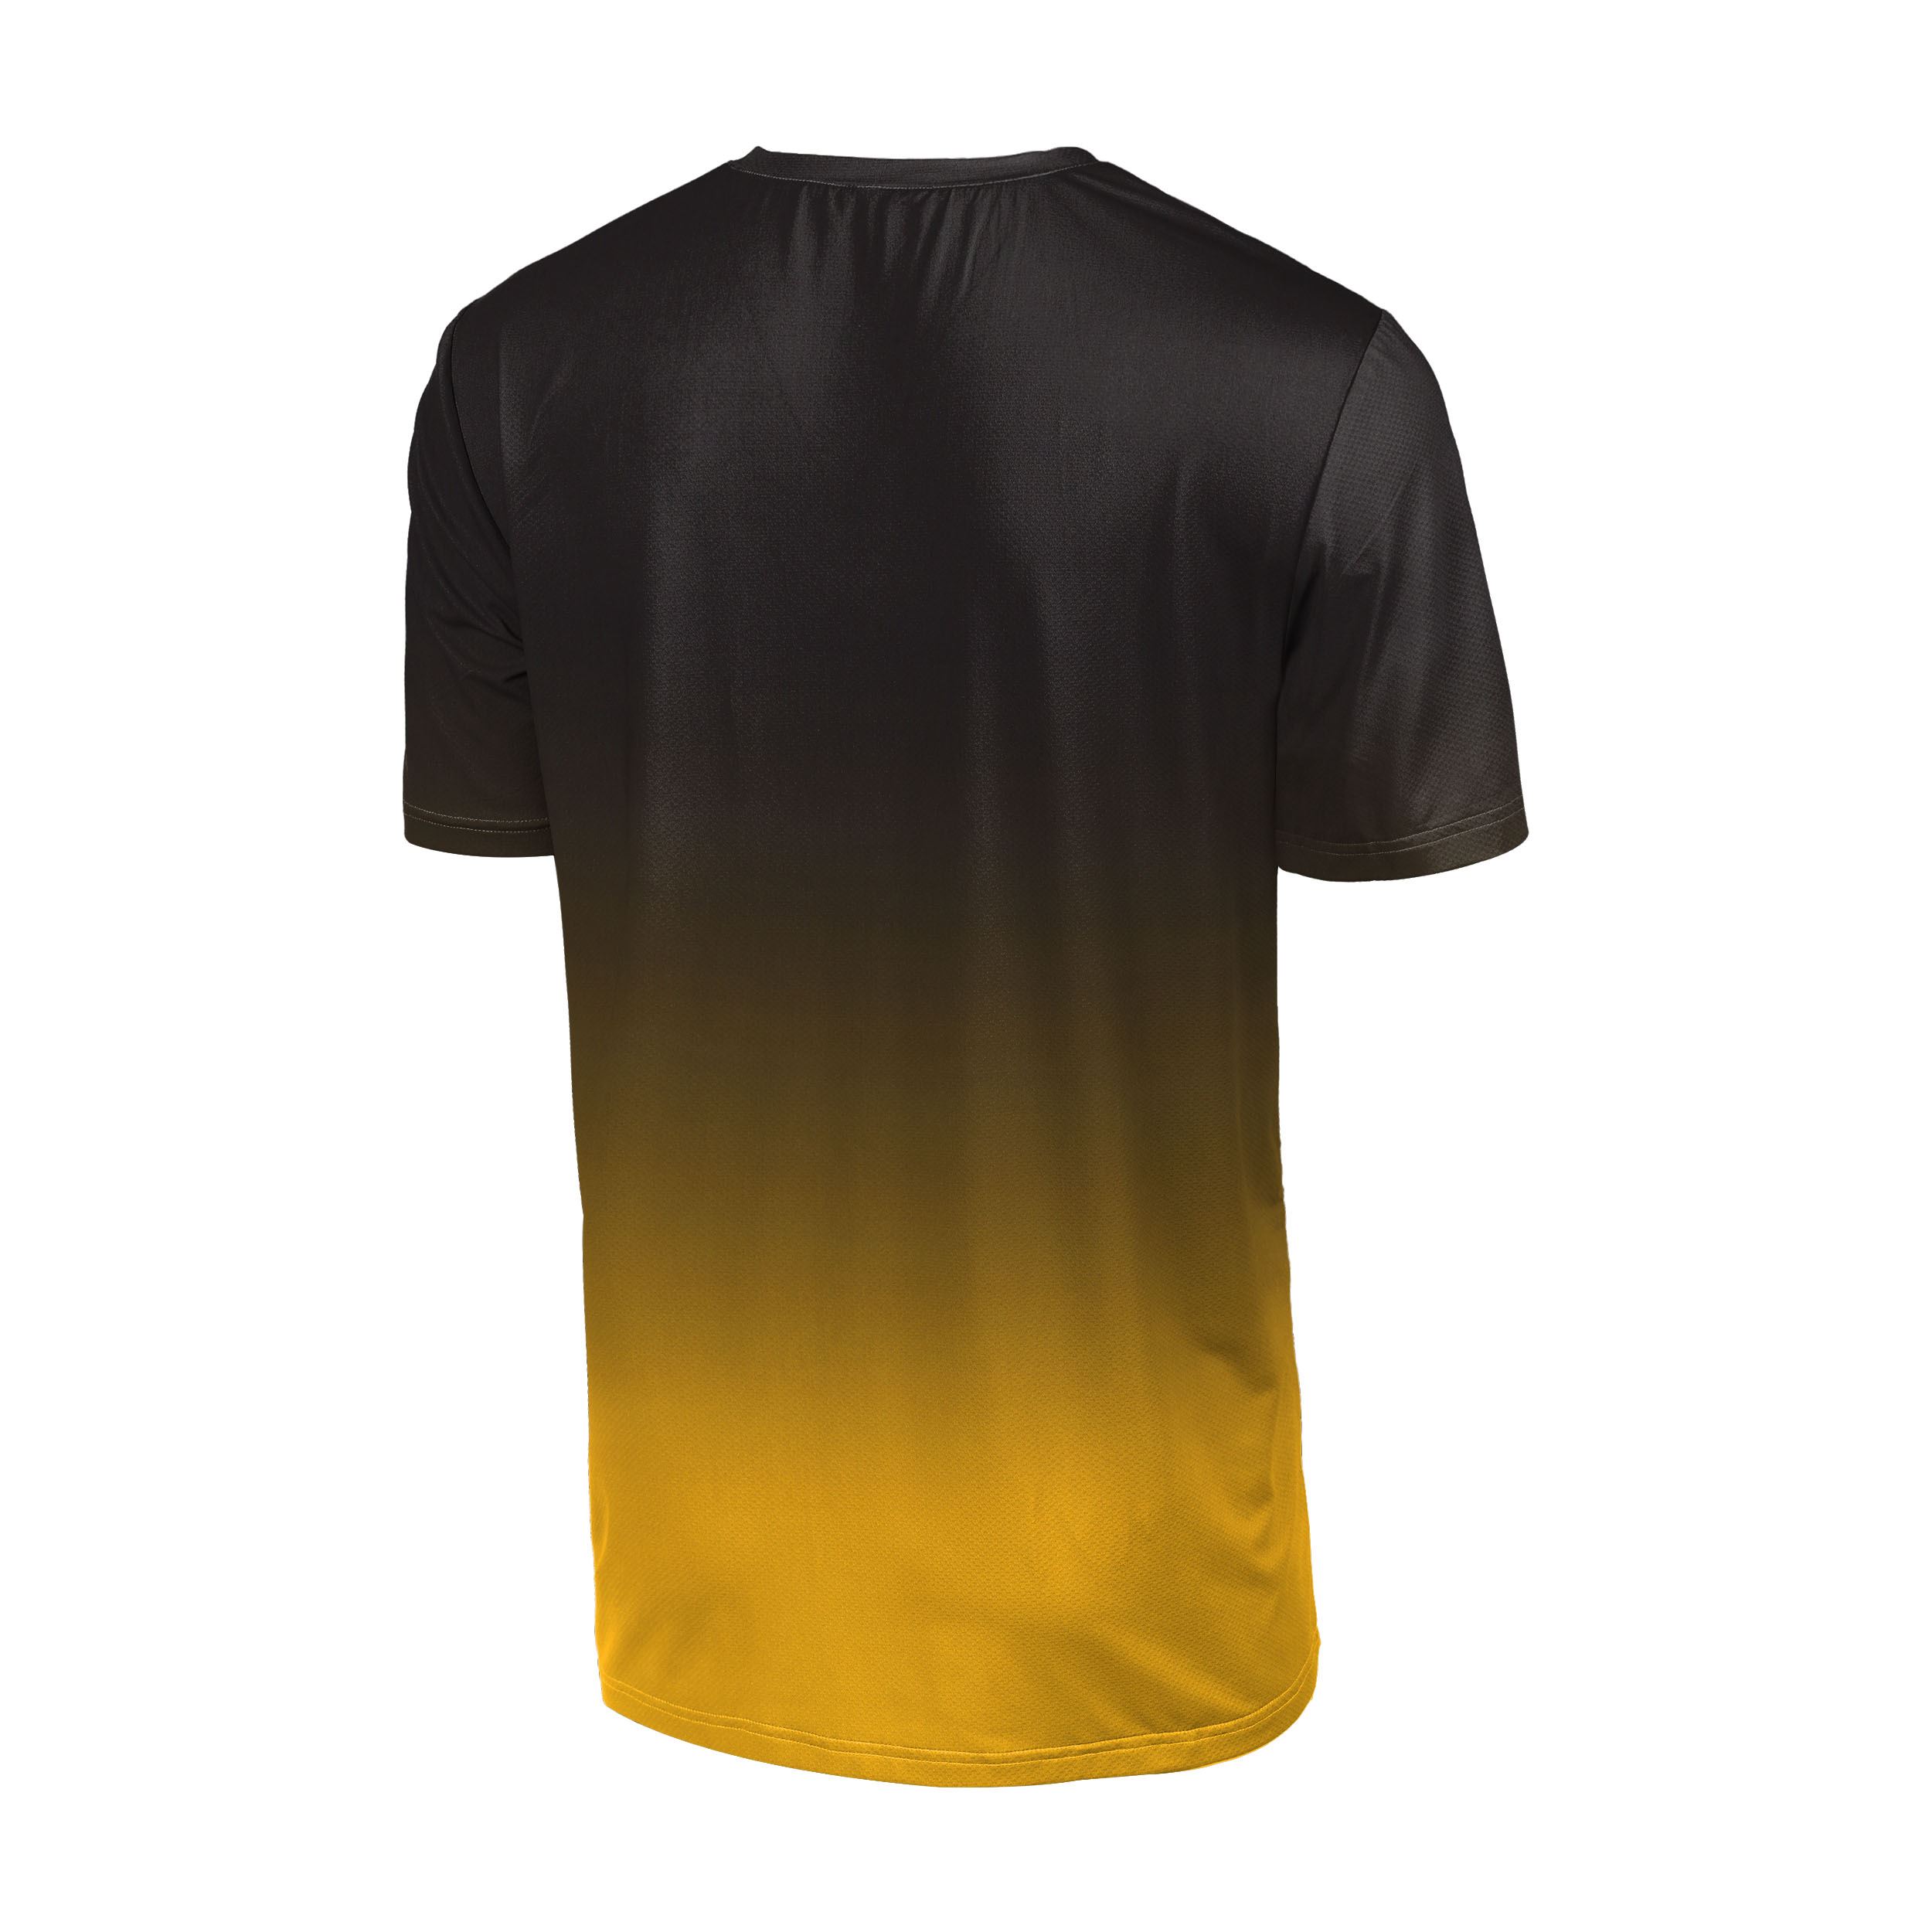 Pittsburgh Steelers NFL Gradient Mesh Jersey Short Sleeve Herren T-Shirt Foco